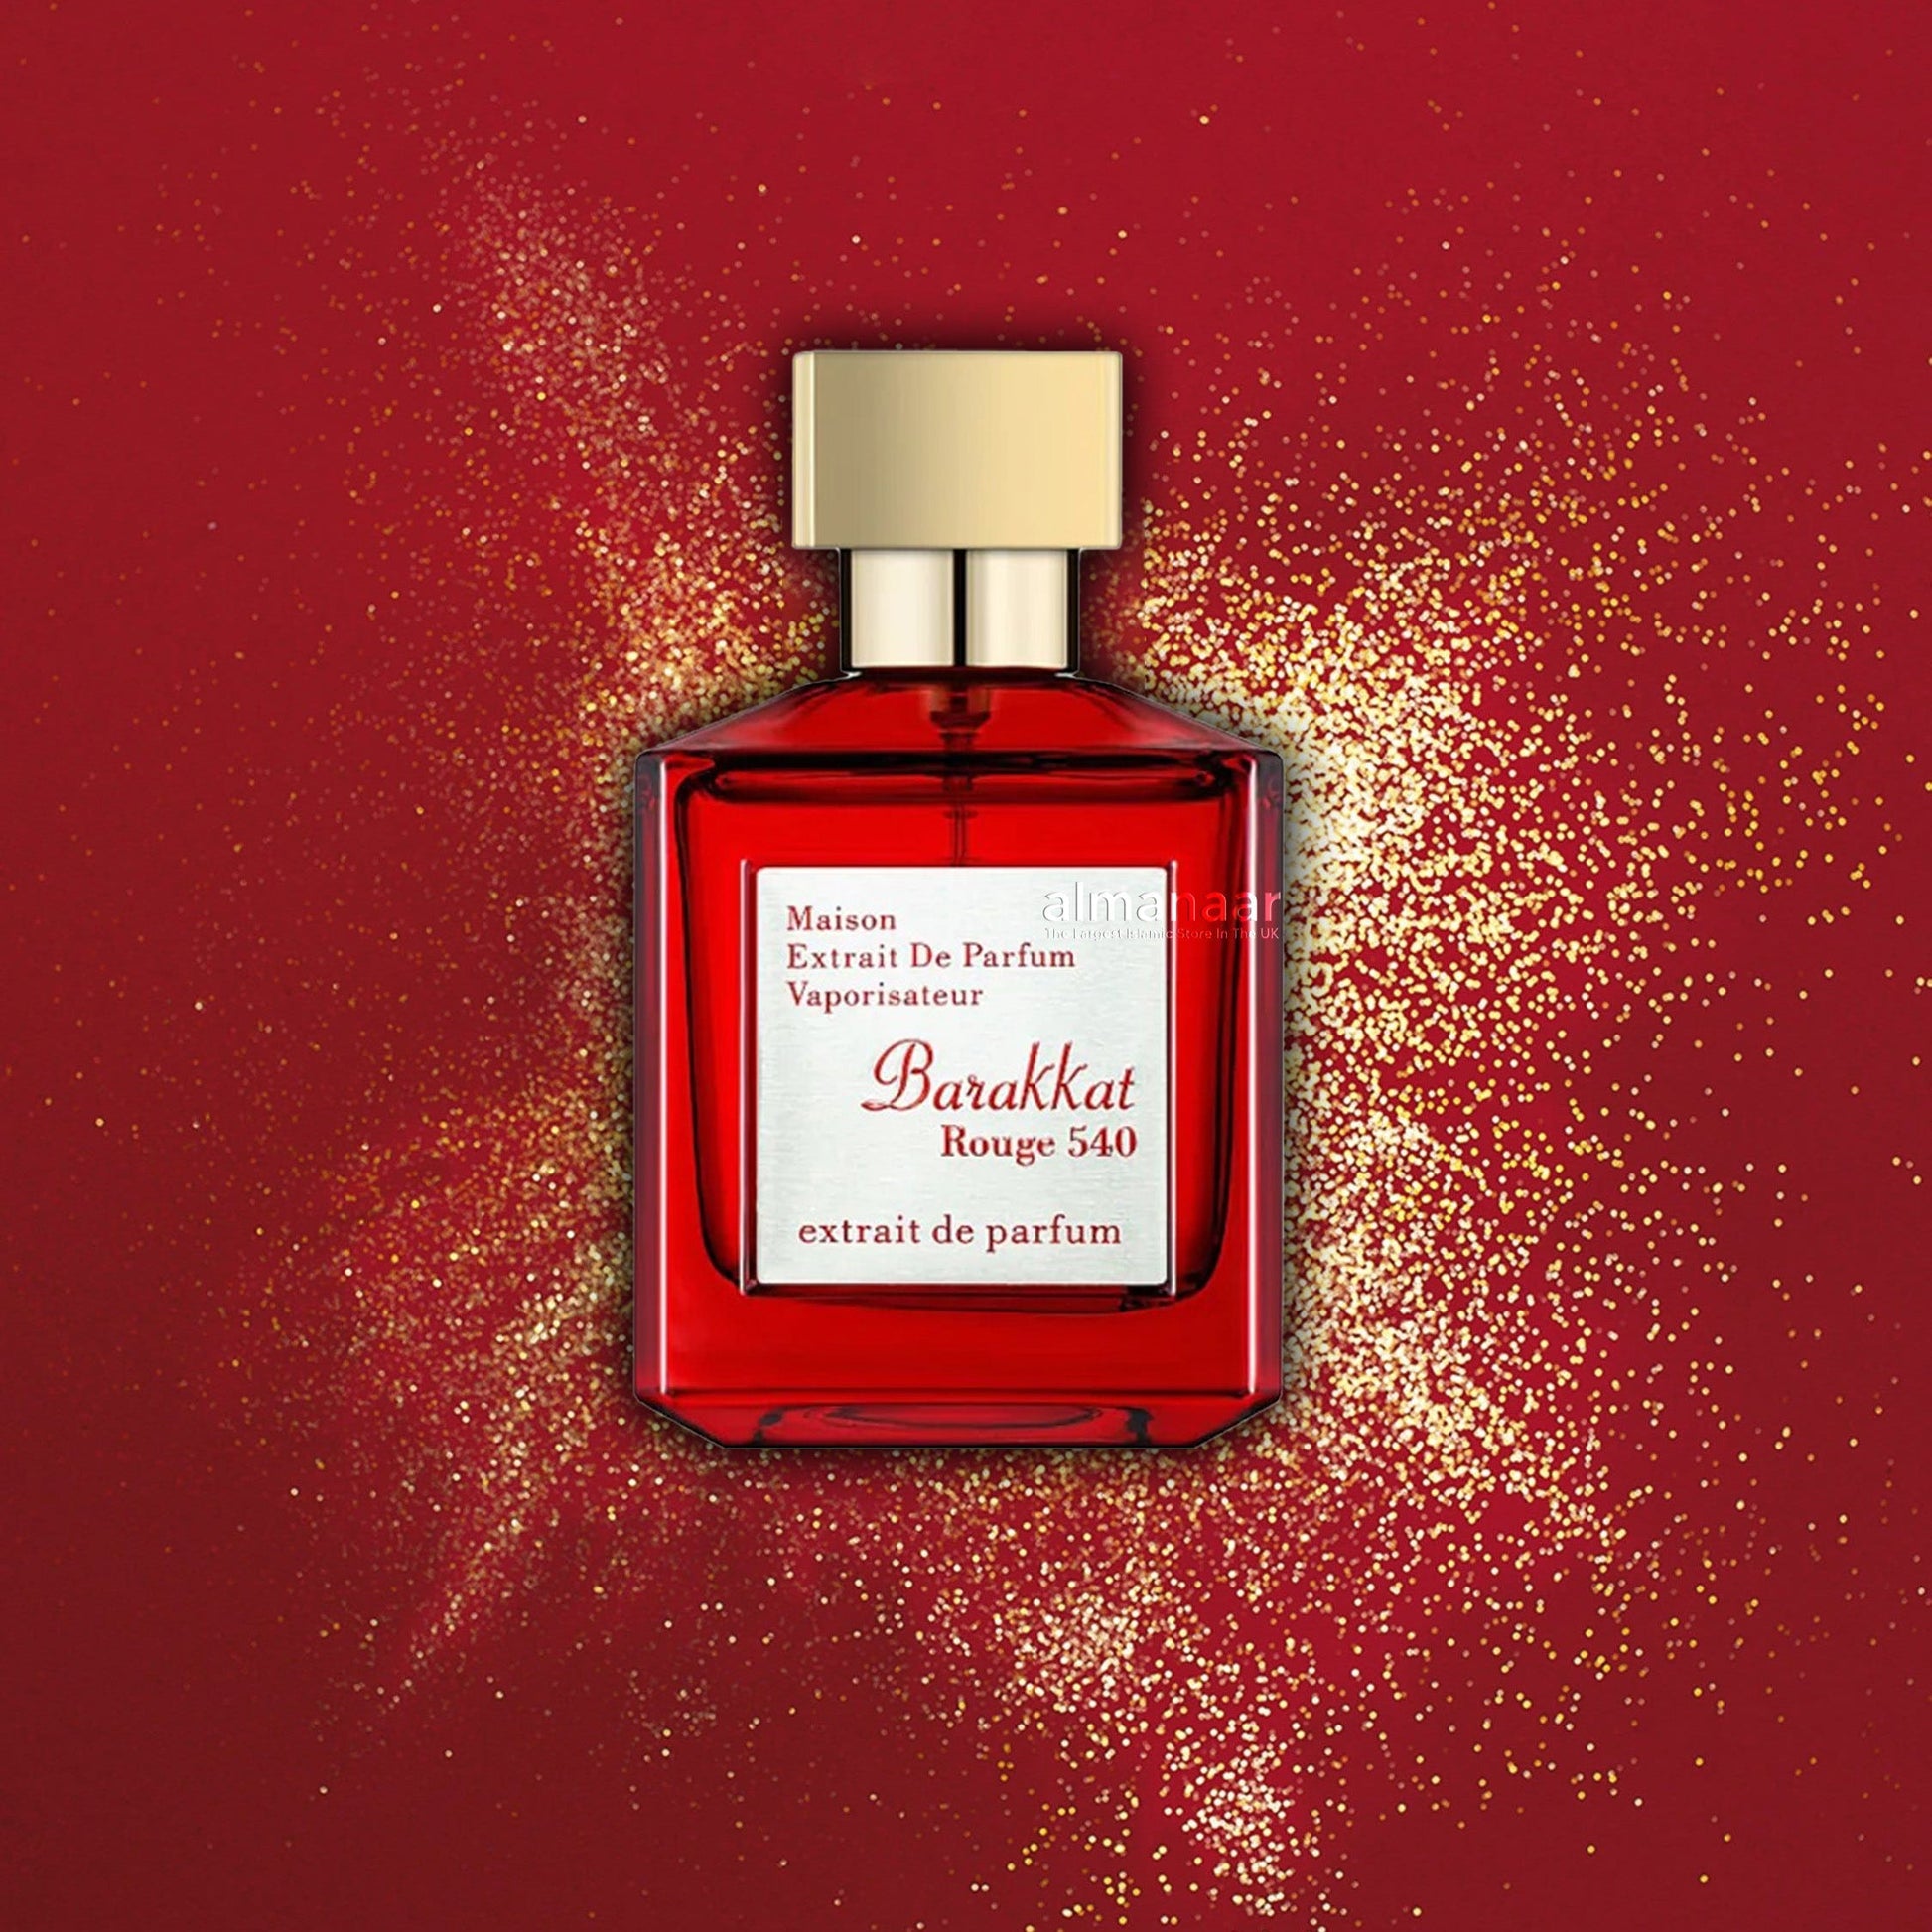 Barakkat Rouge 540 Maison Extrait de Parfum 100ml Fragrance World-Perfume Heaven